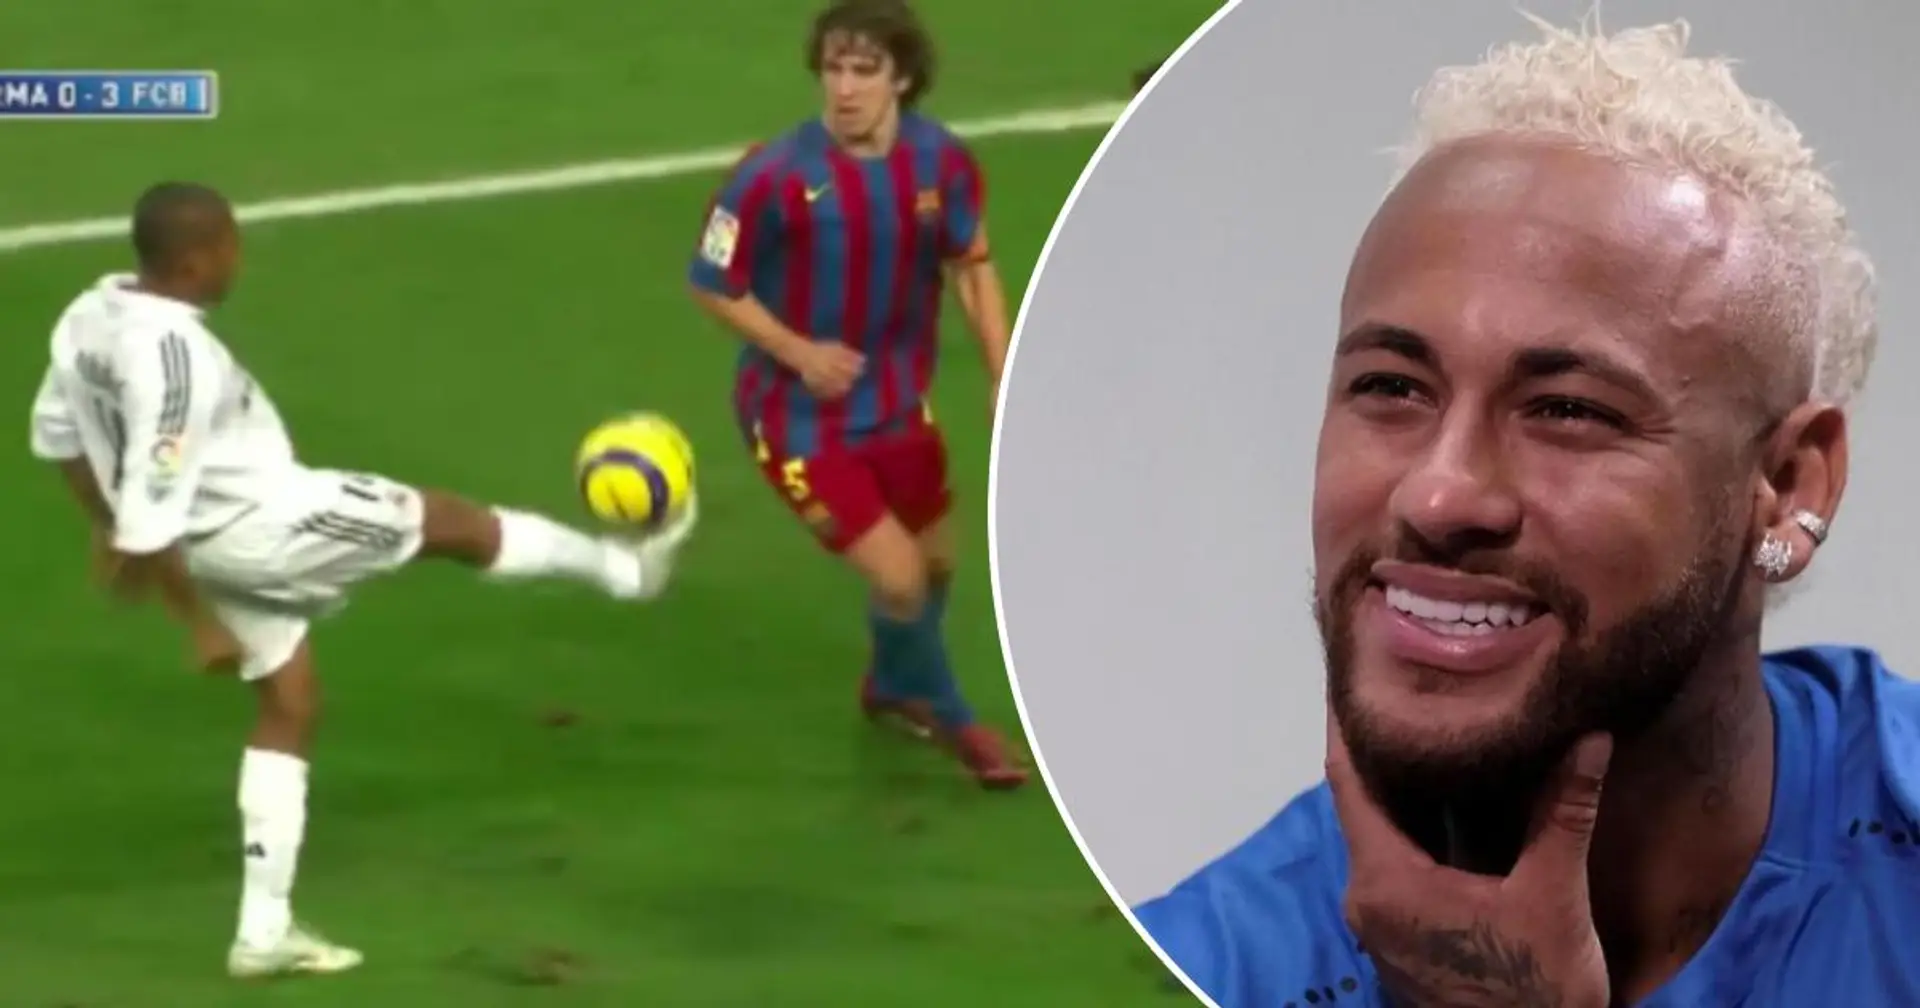 Neymar nennt 3 Fußballer, deren Spiele er sich am liebsten anschaut